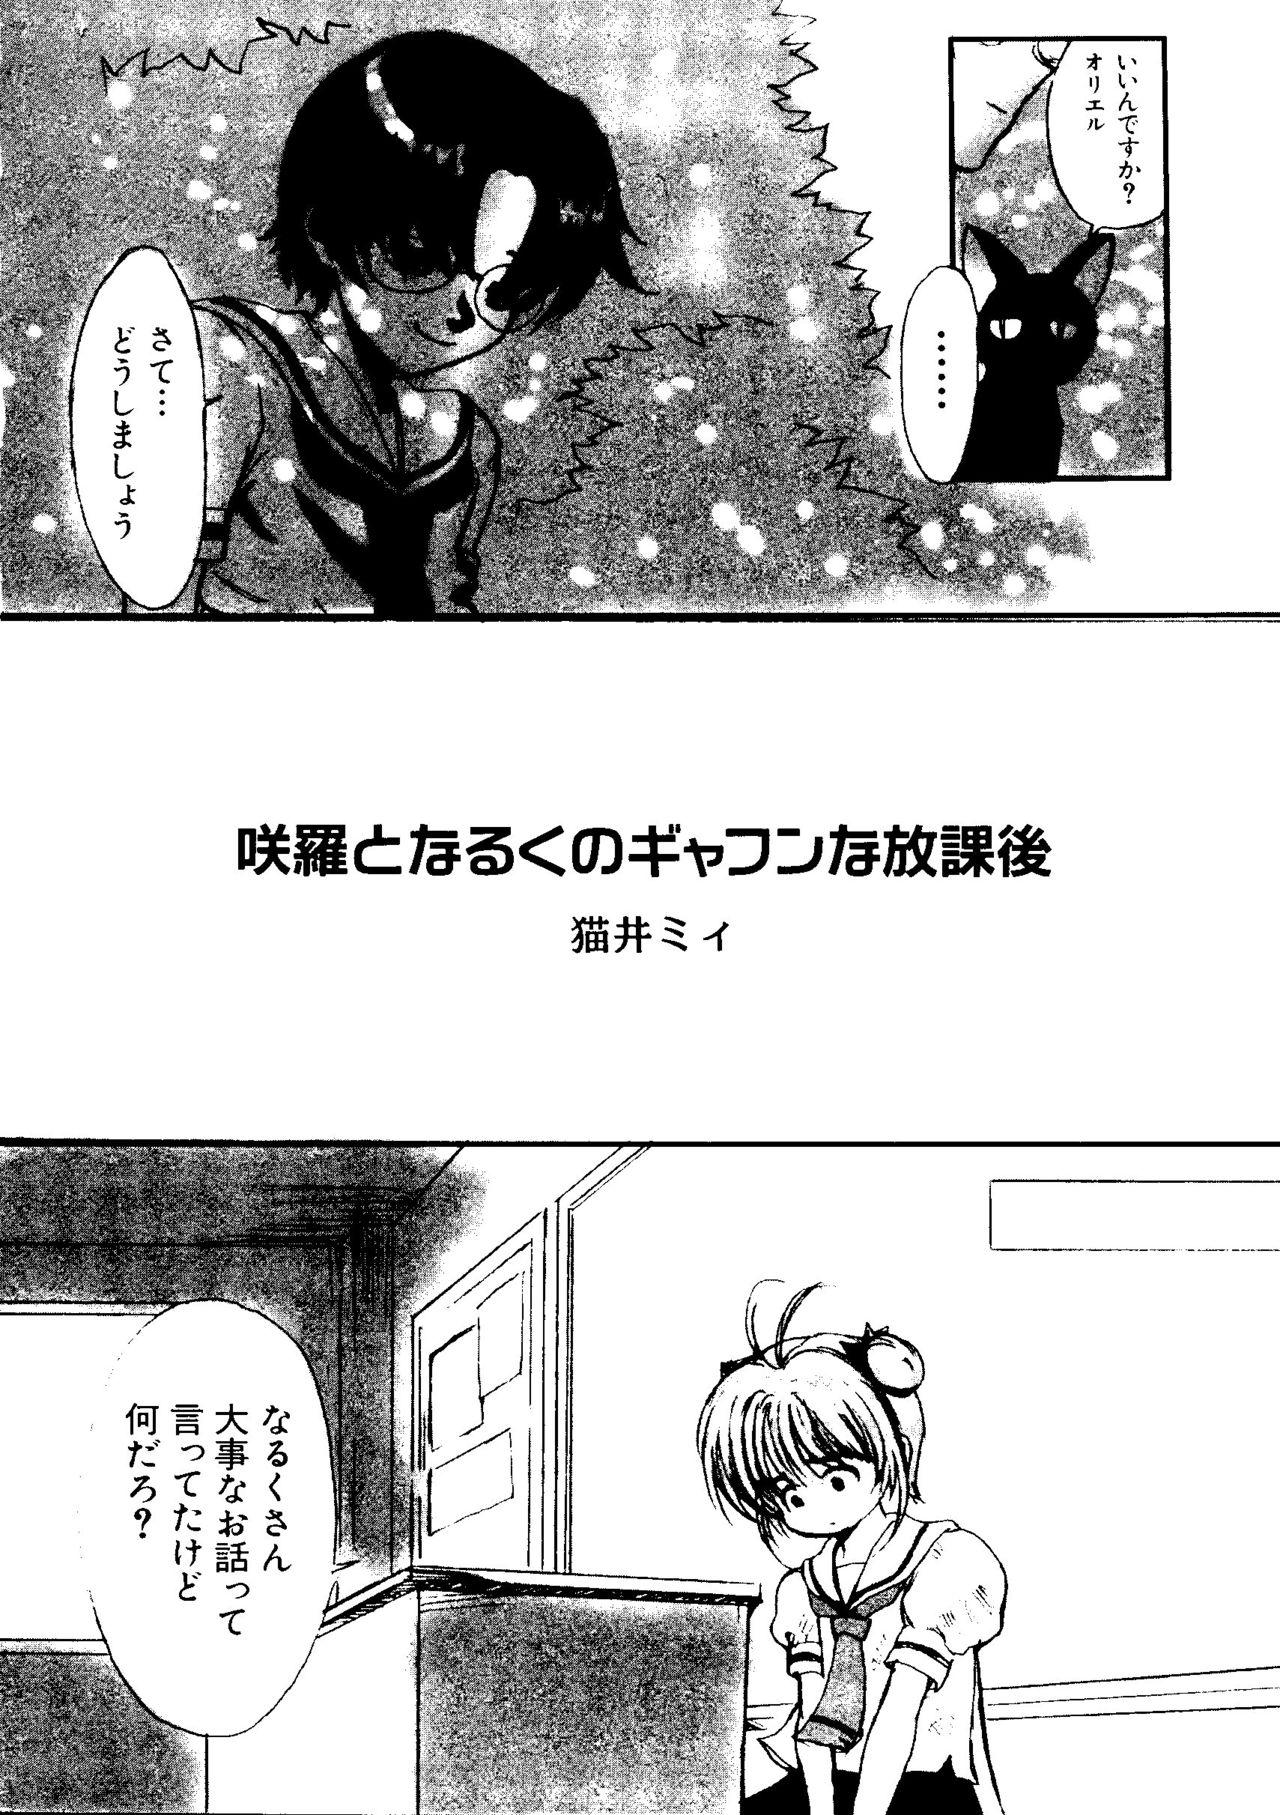 White Chick Love Chara Taizen No. 5 - Cardcaptor sakura Ojamajo doremi Digimon adventure Ecoko Azuki-chan Russian - Page 7